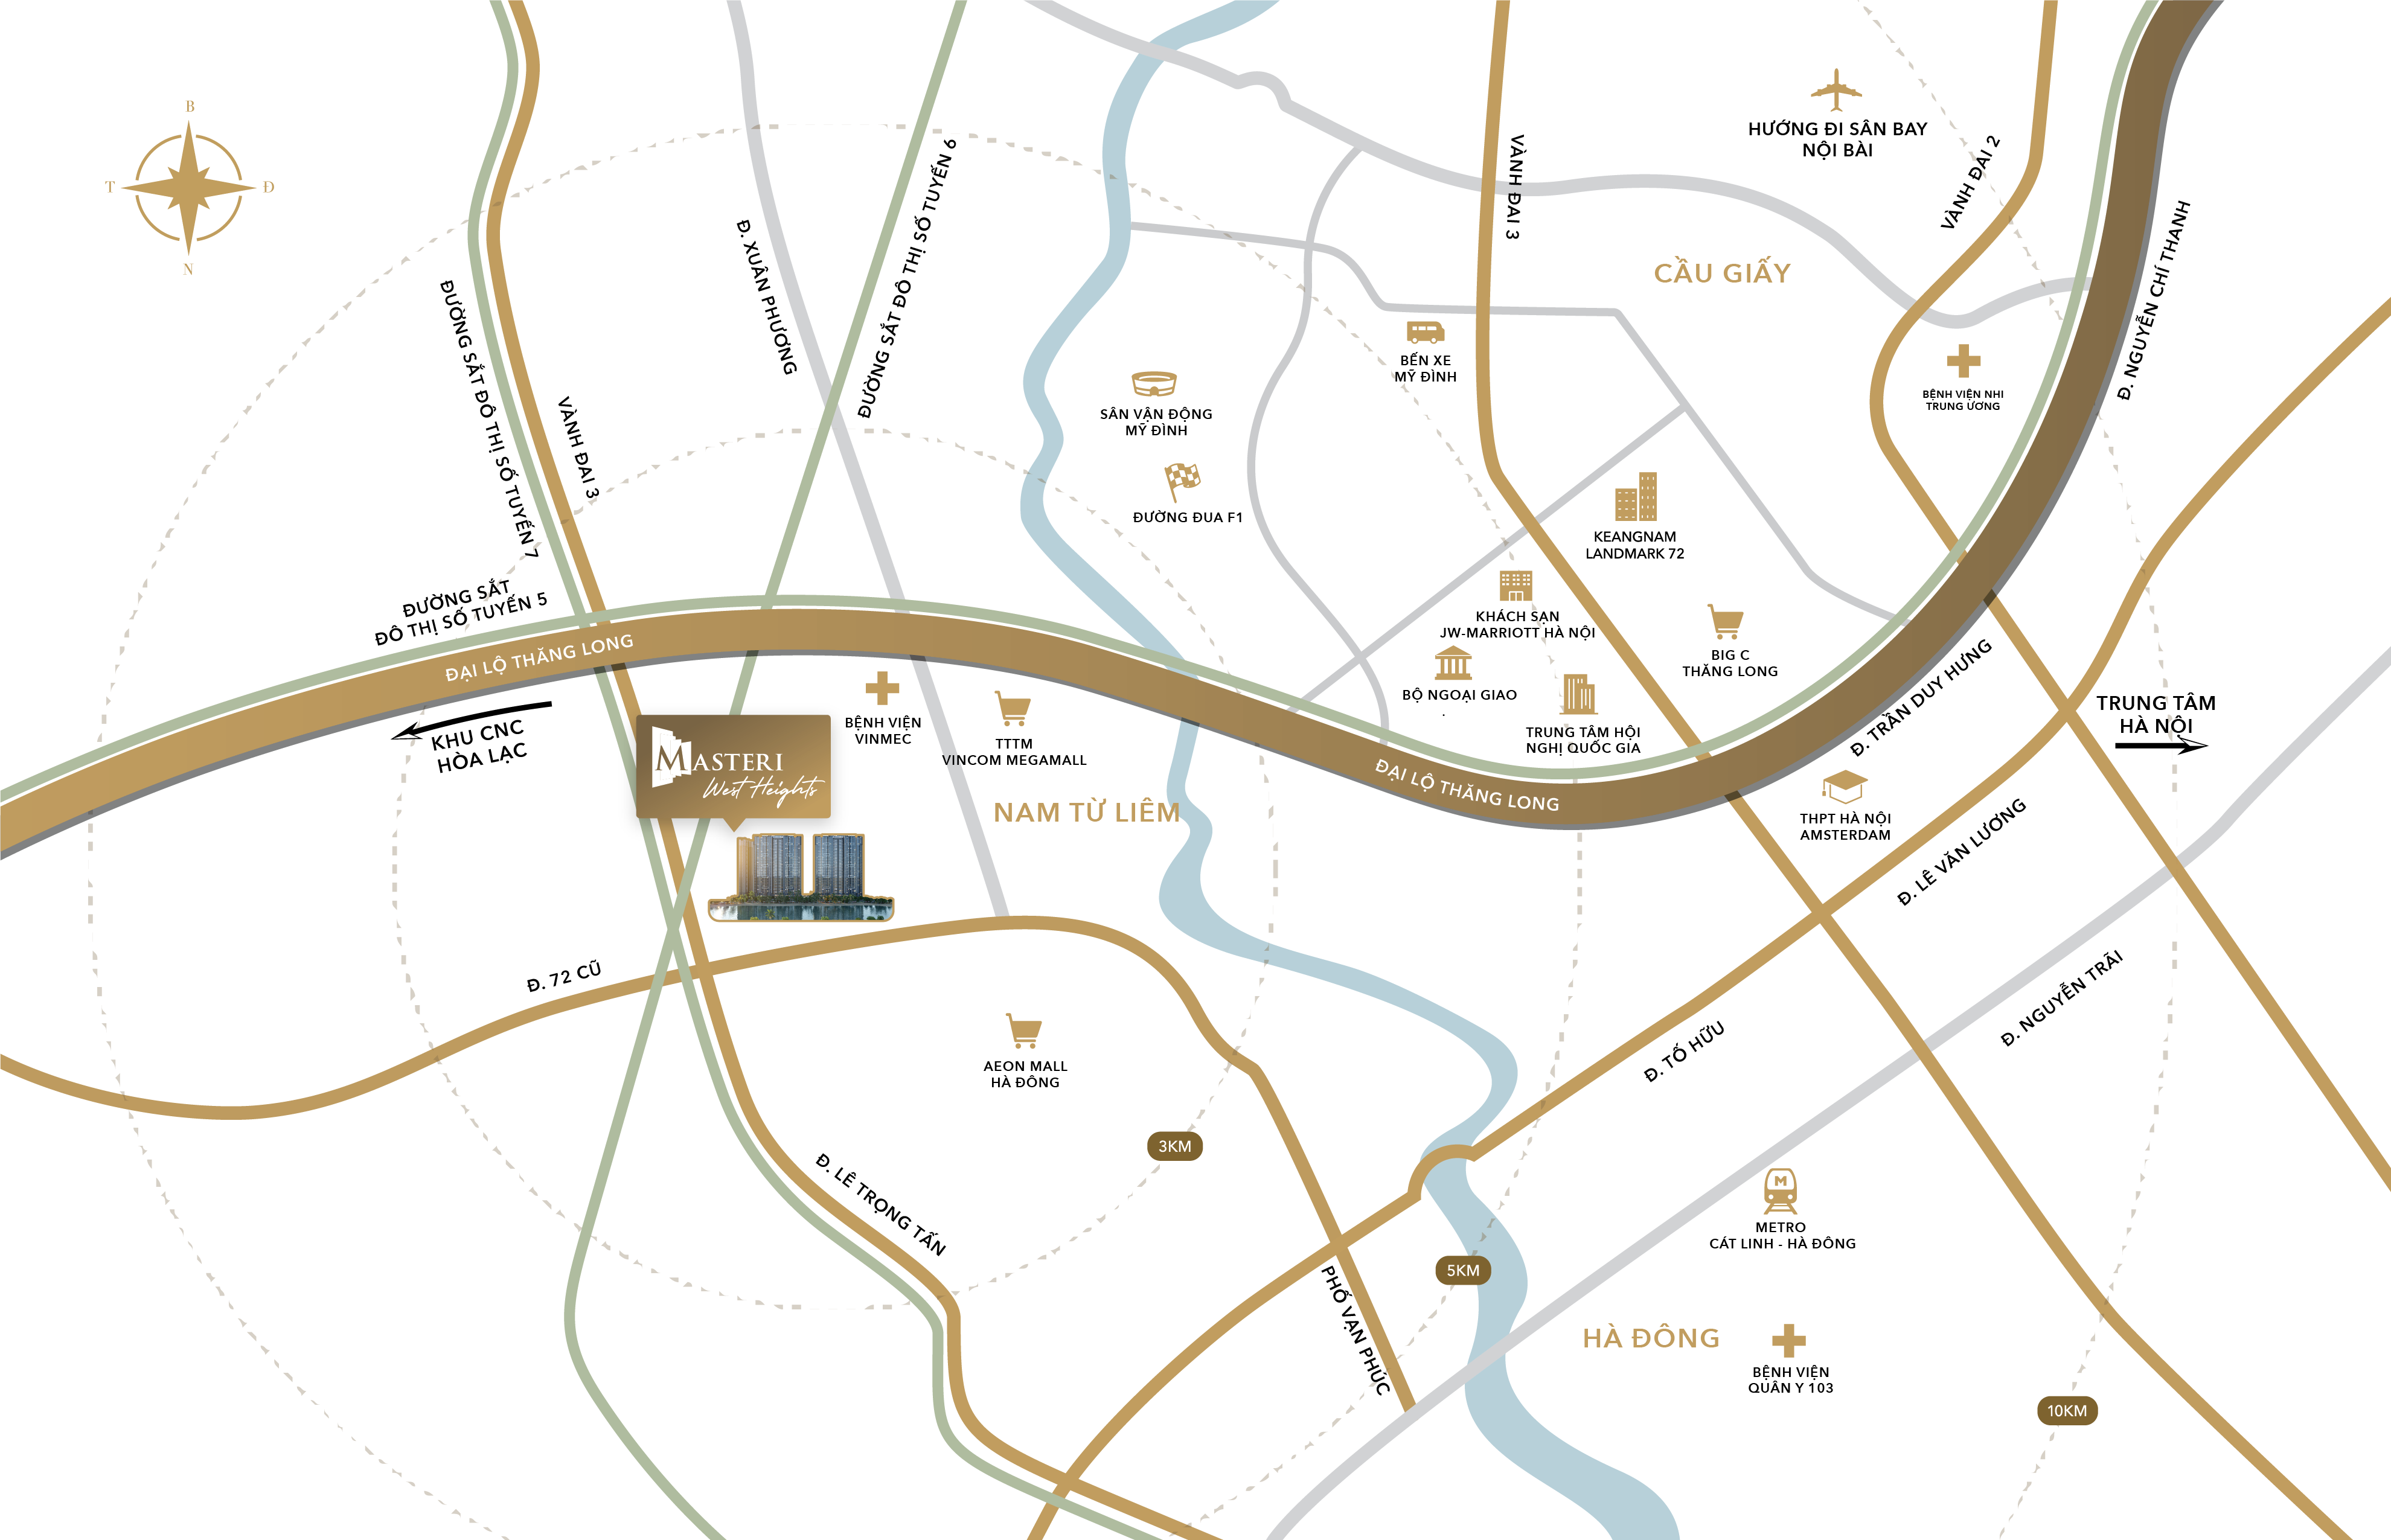 EXTERNAL MAP